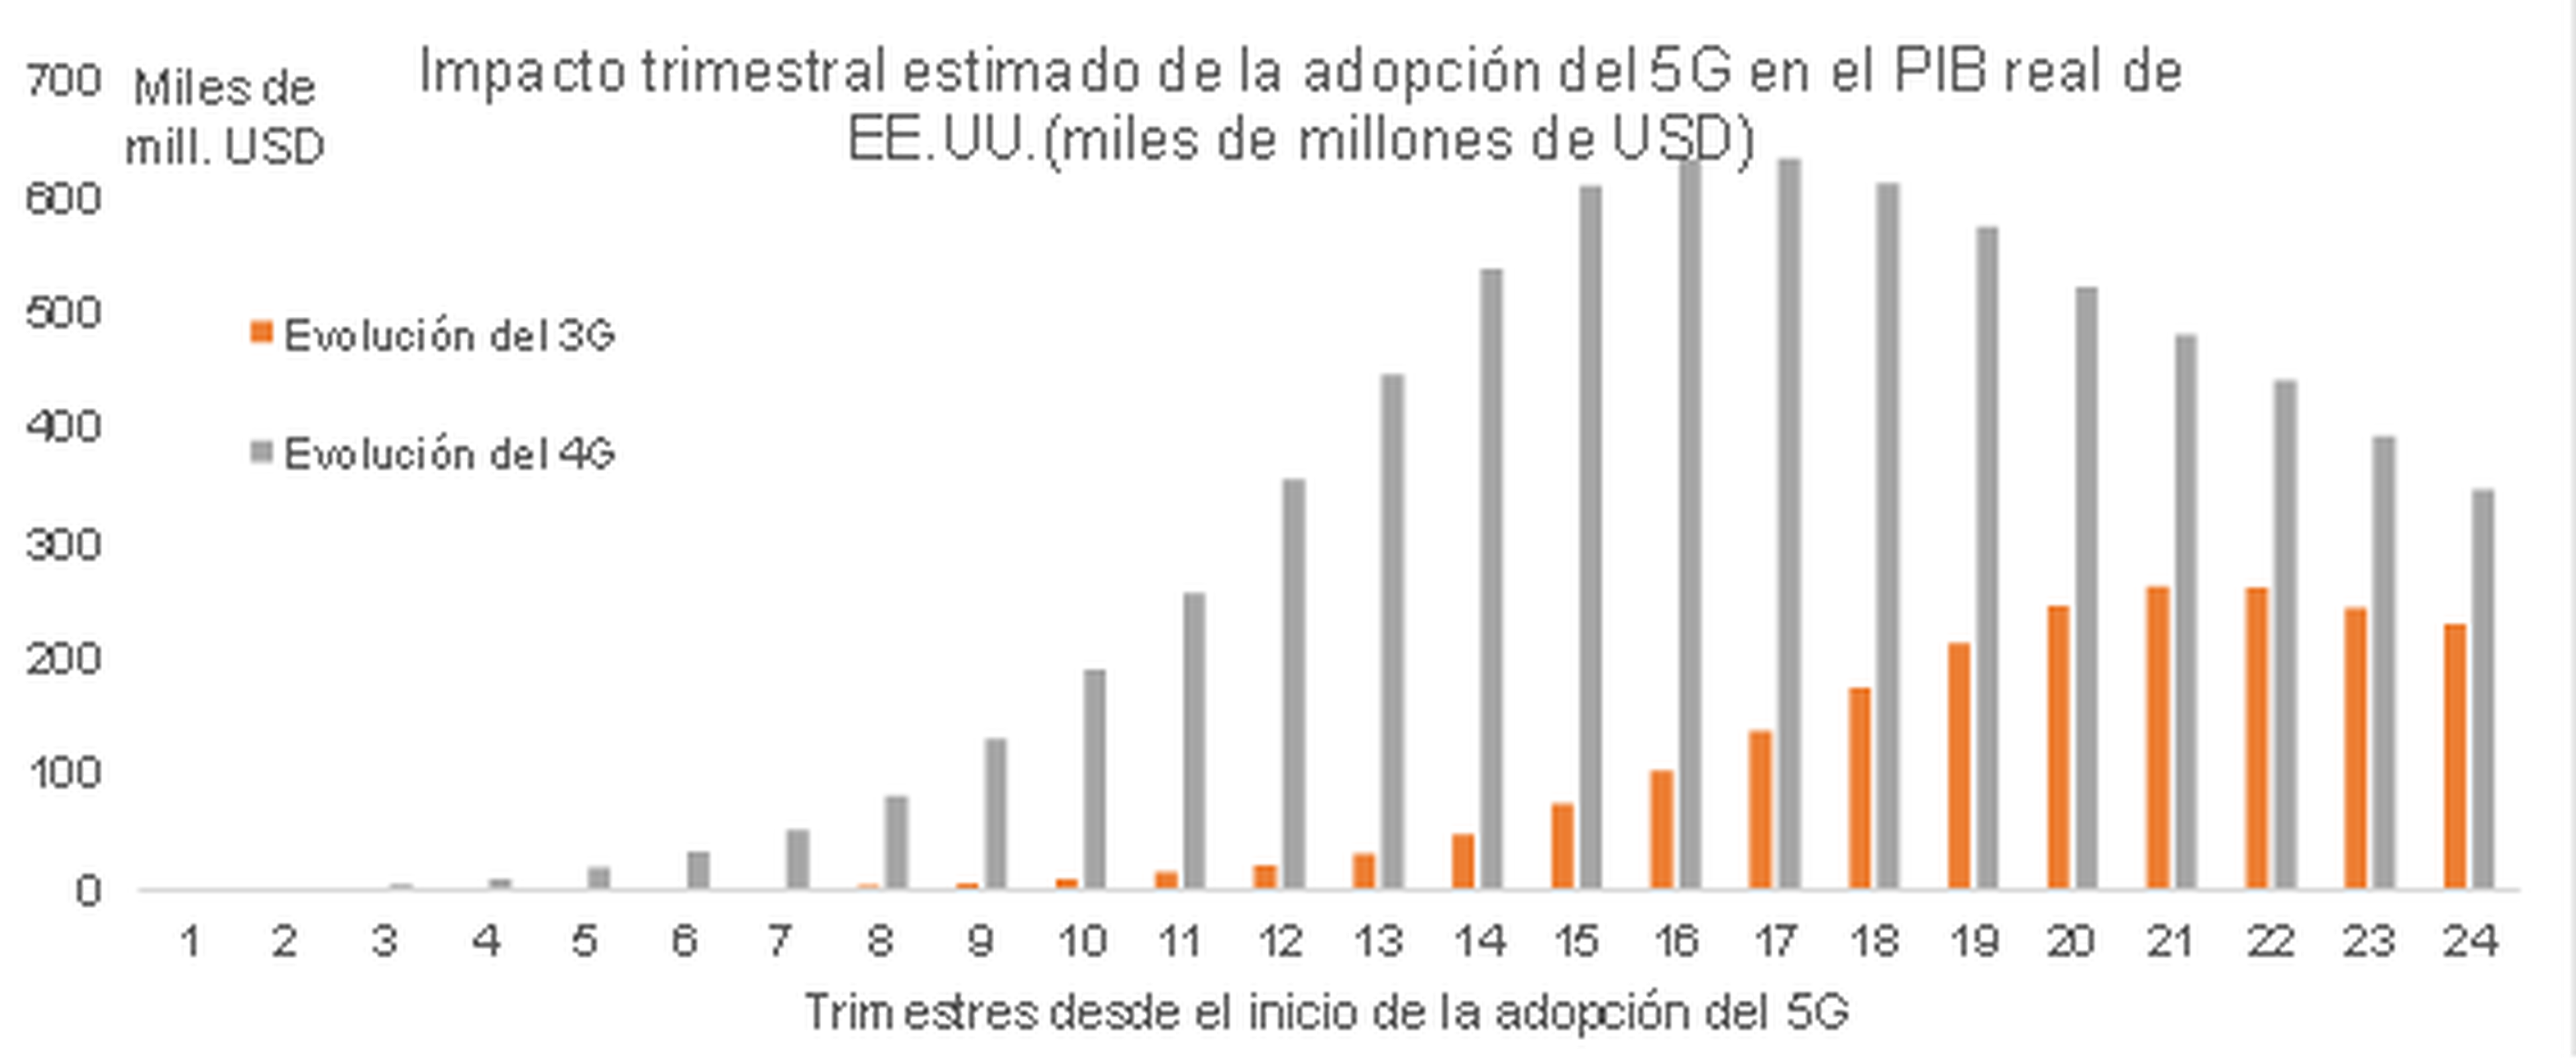 Impacto trimestral estimado de la adopción del 5G en EEUU.